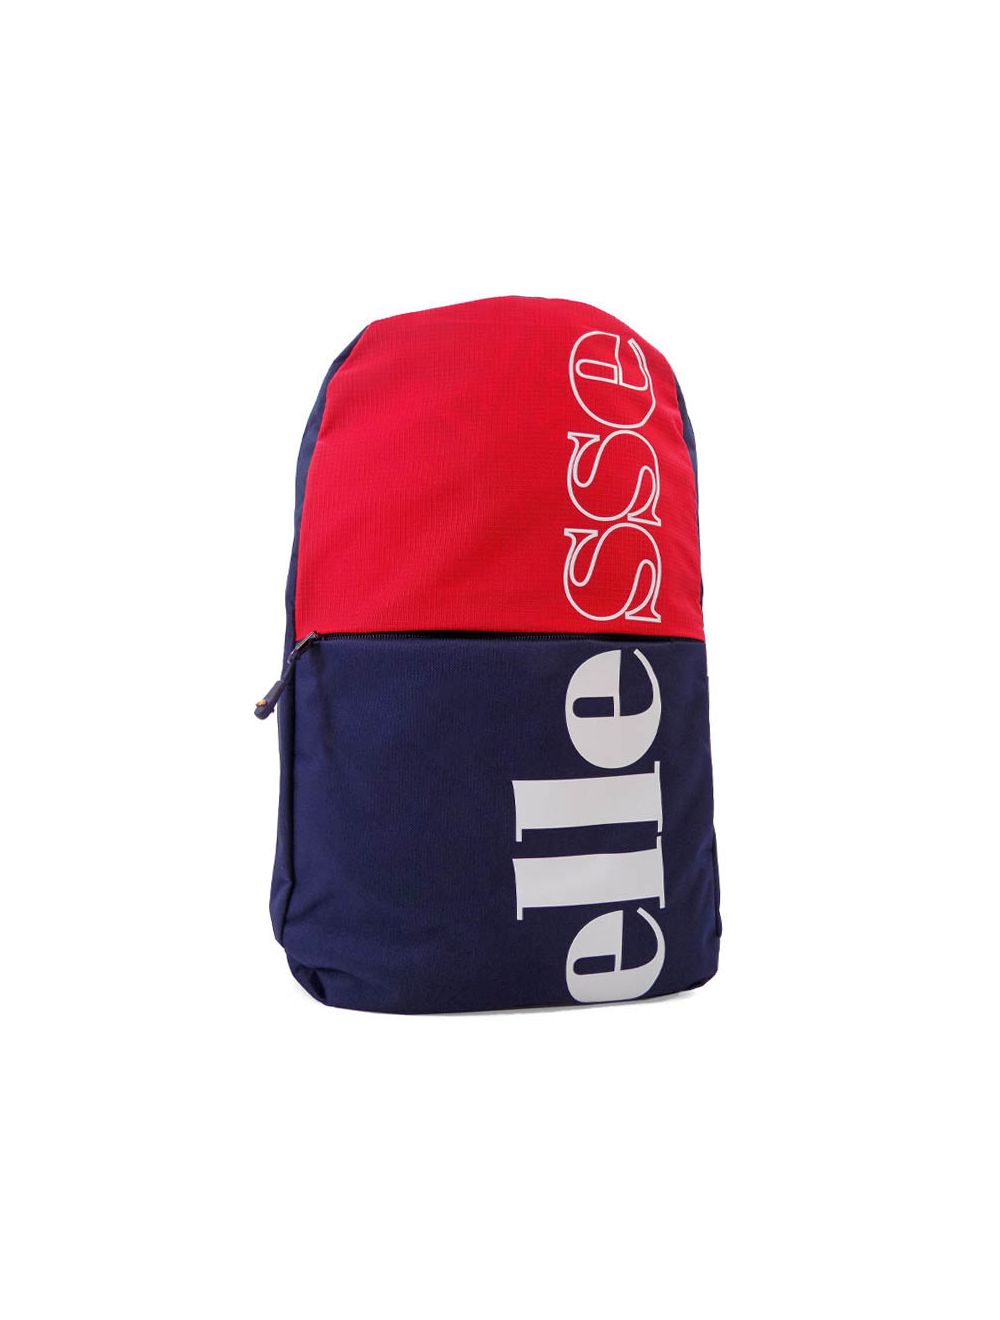 Shop ellesse Colorblock Backpack Navy Red